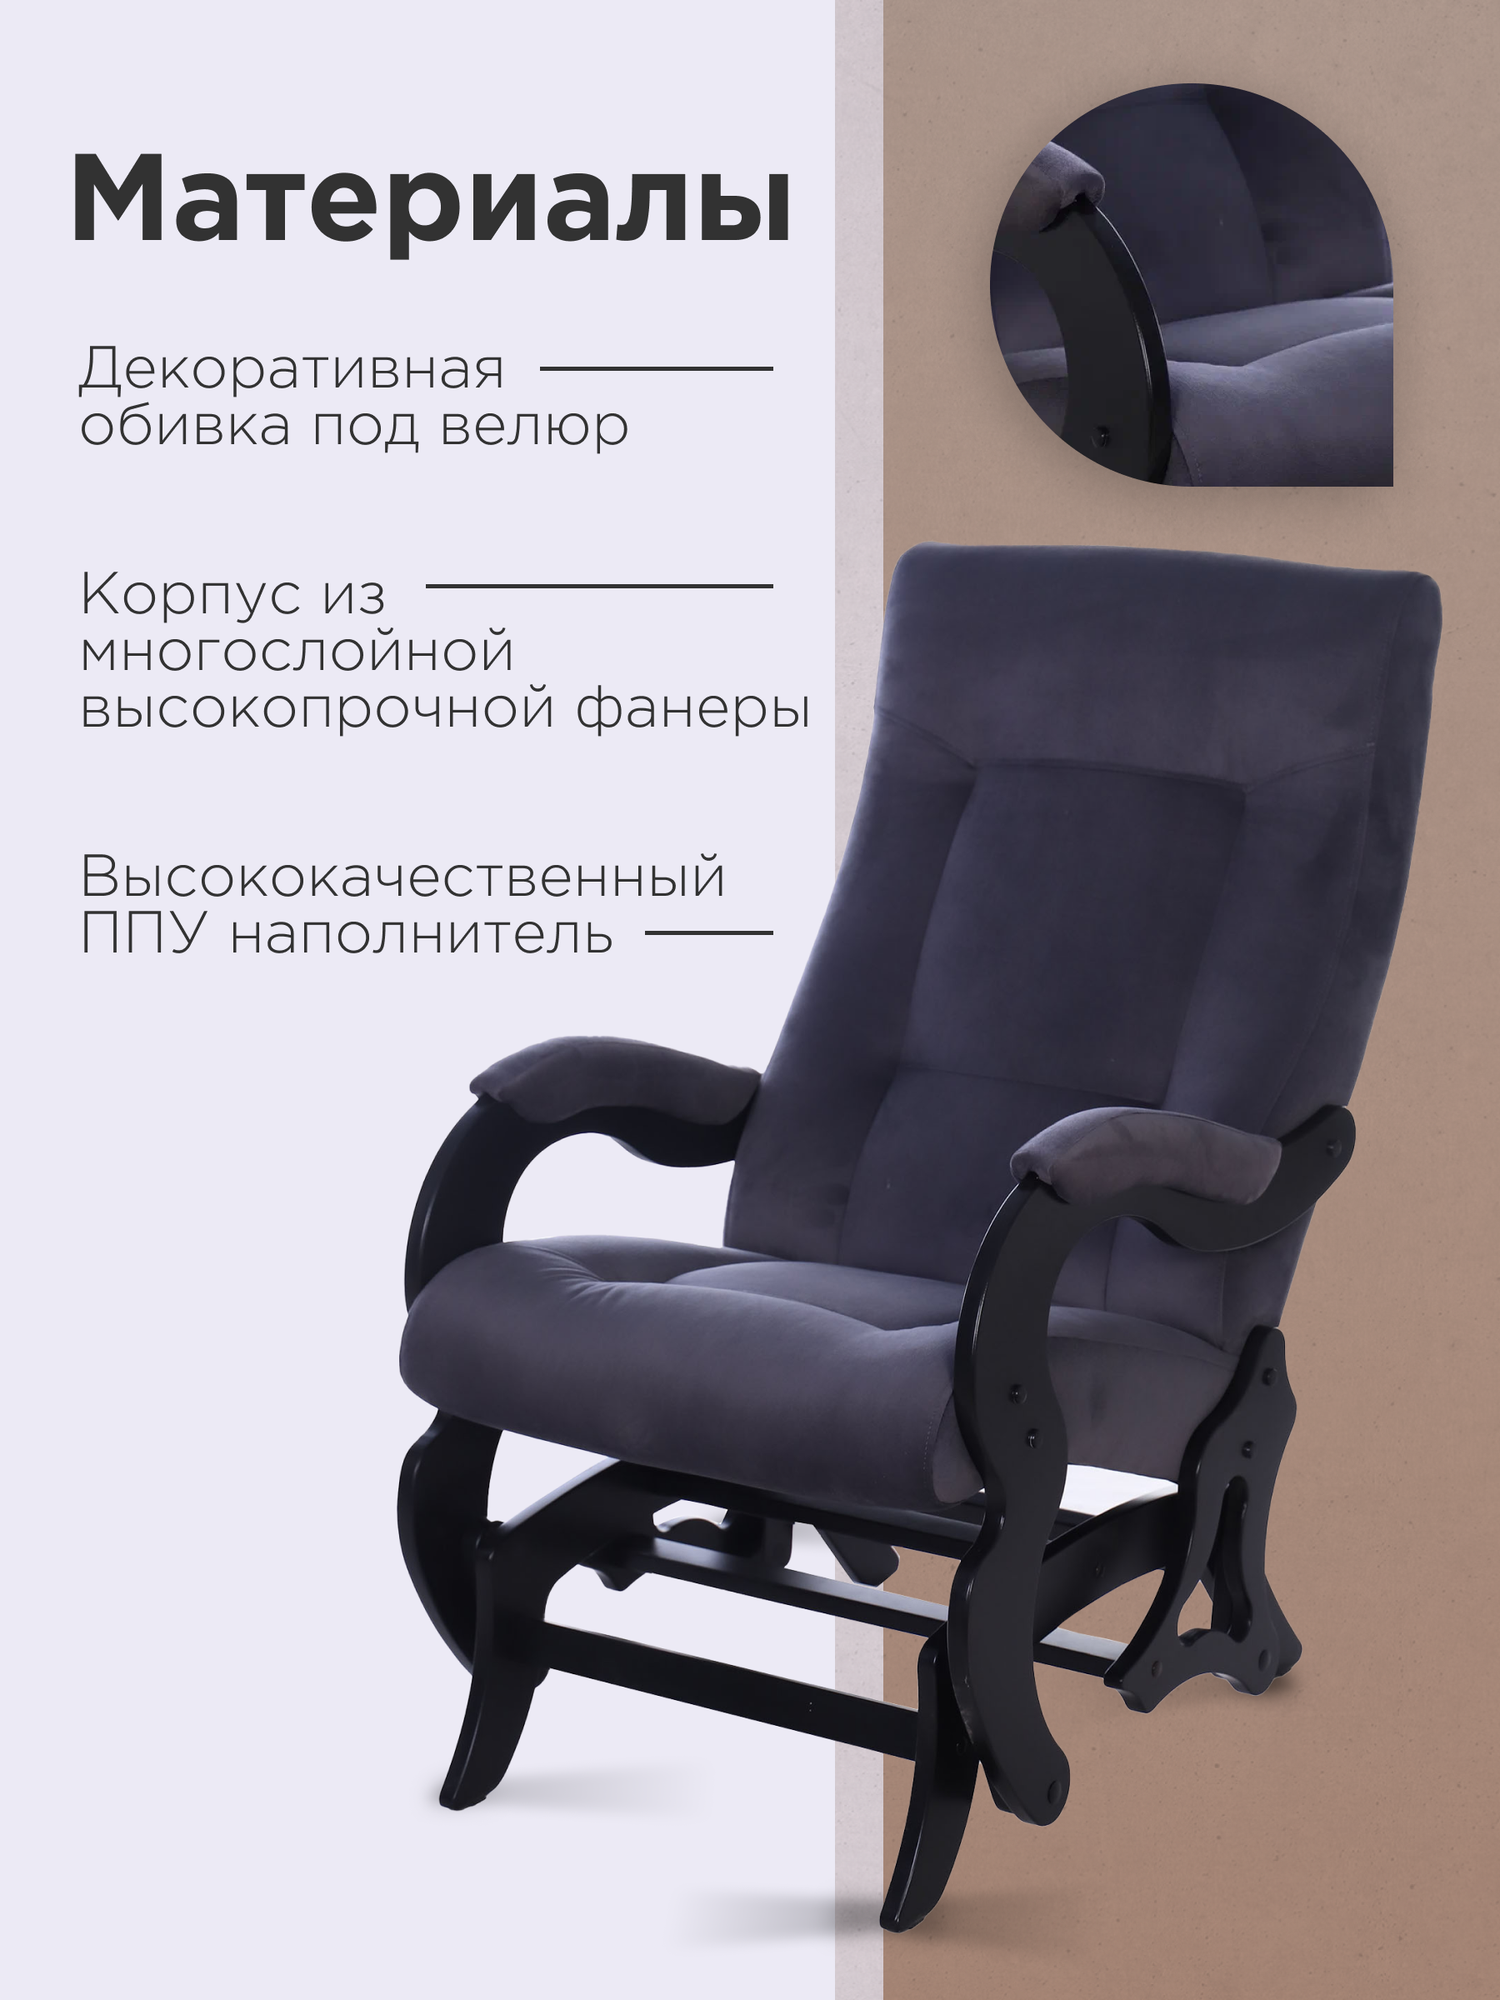 Кресло-качалка маятник "Версаль", тип ткани - велюр, цвет серый, ДеСтейл